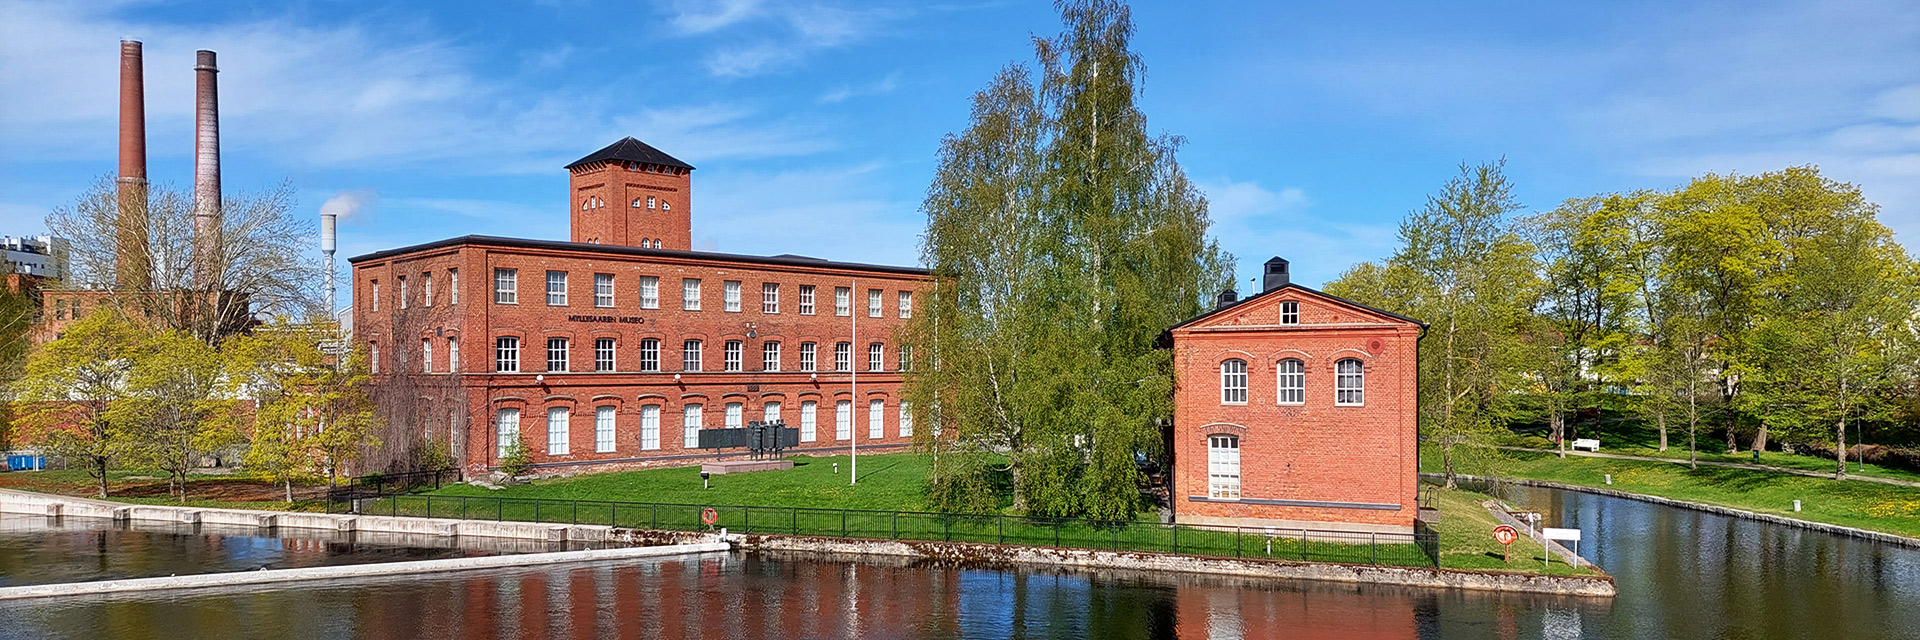 Myllysaaren museon rakennukset, edessä vettä ja vanha kanava.